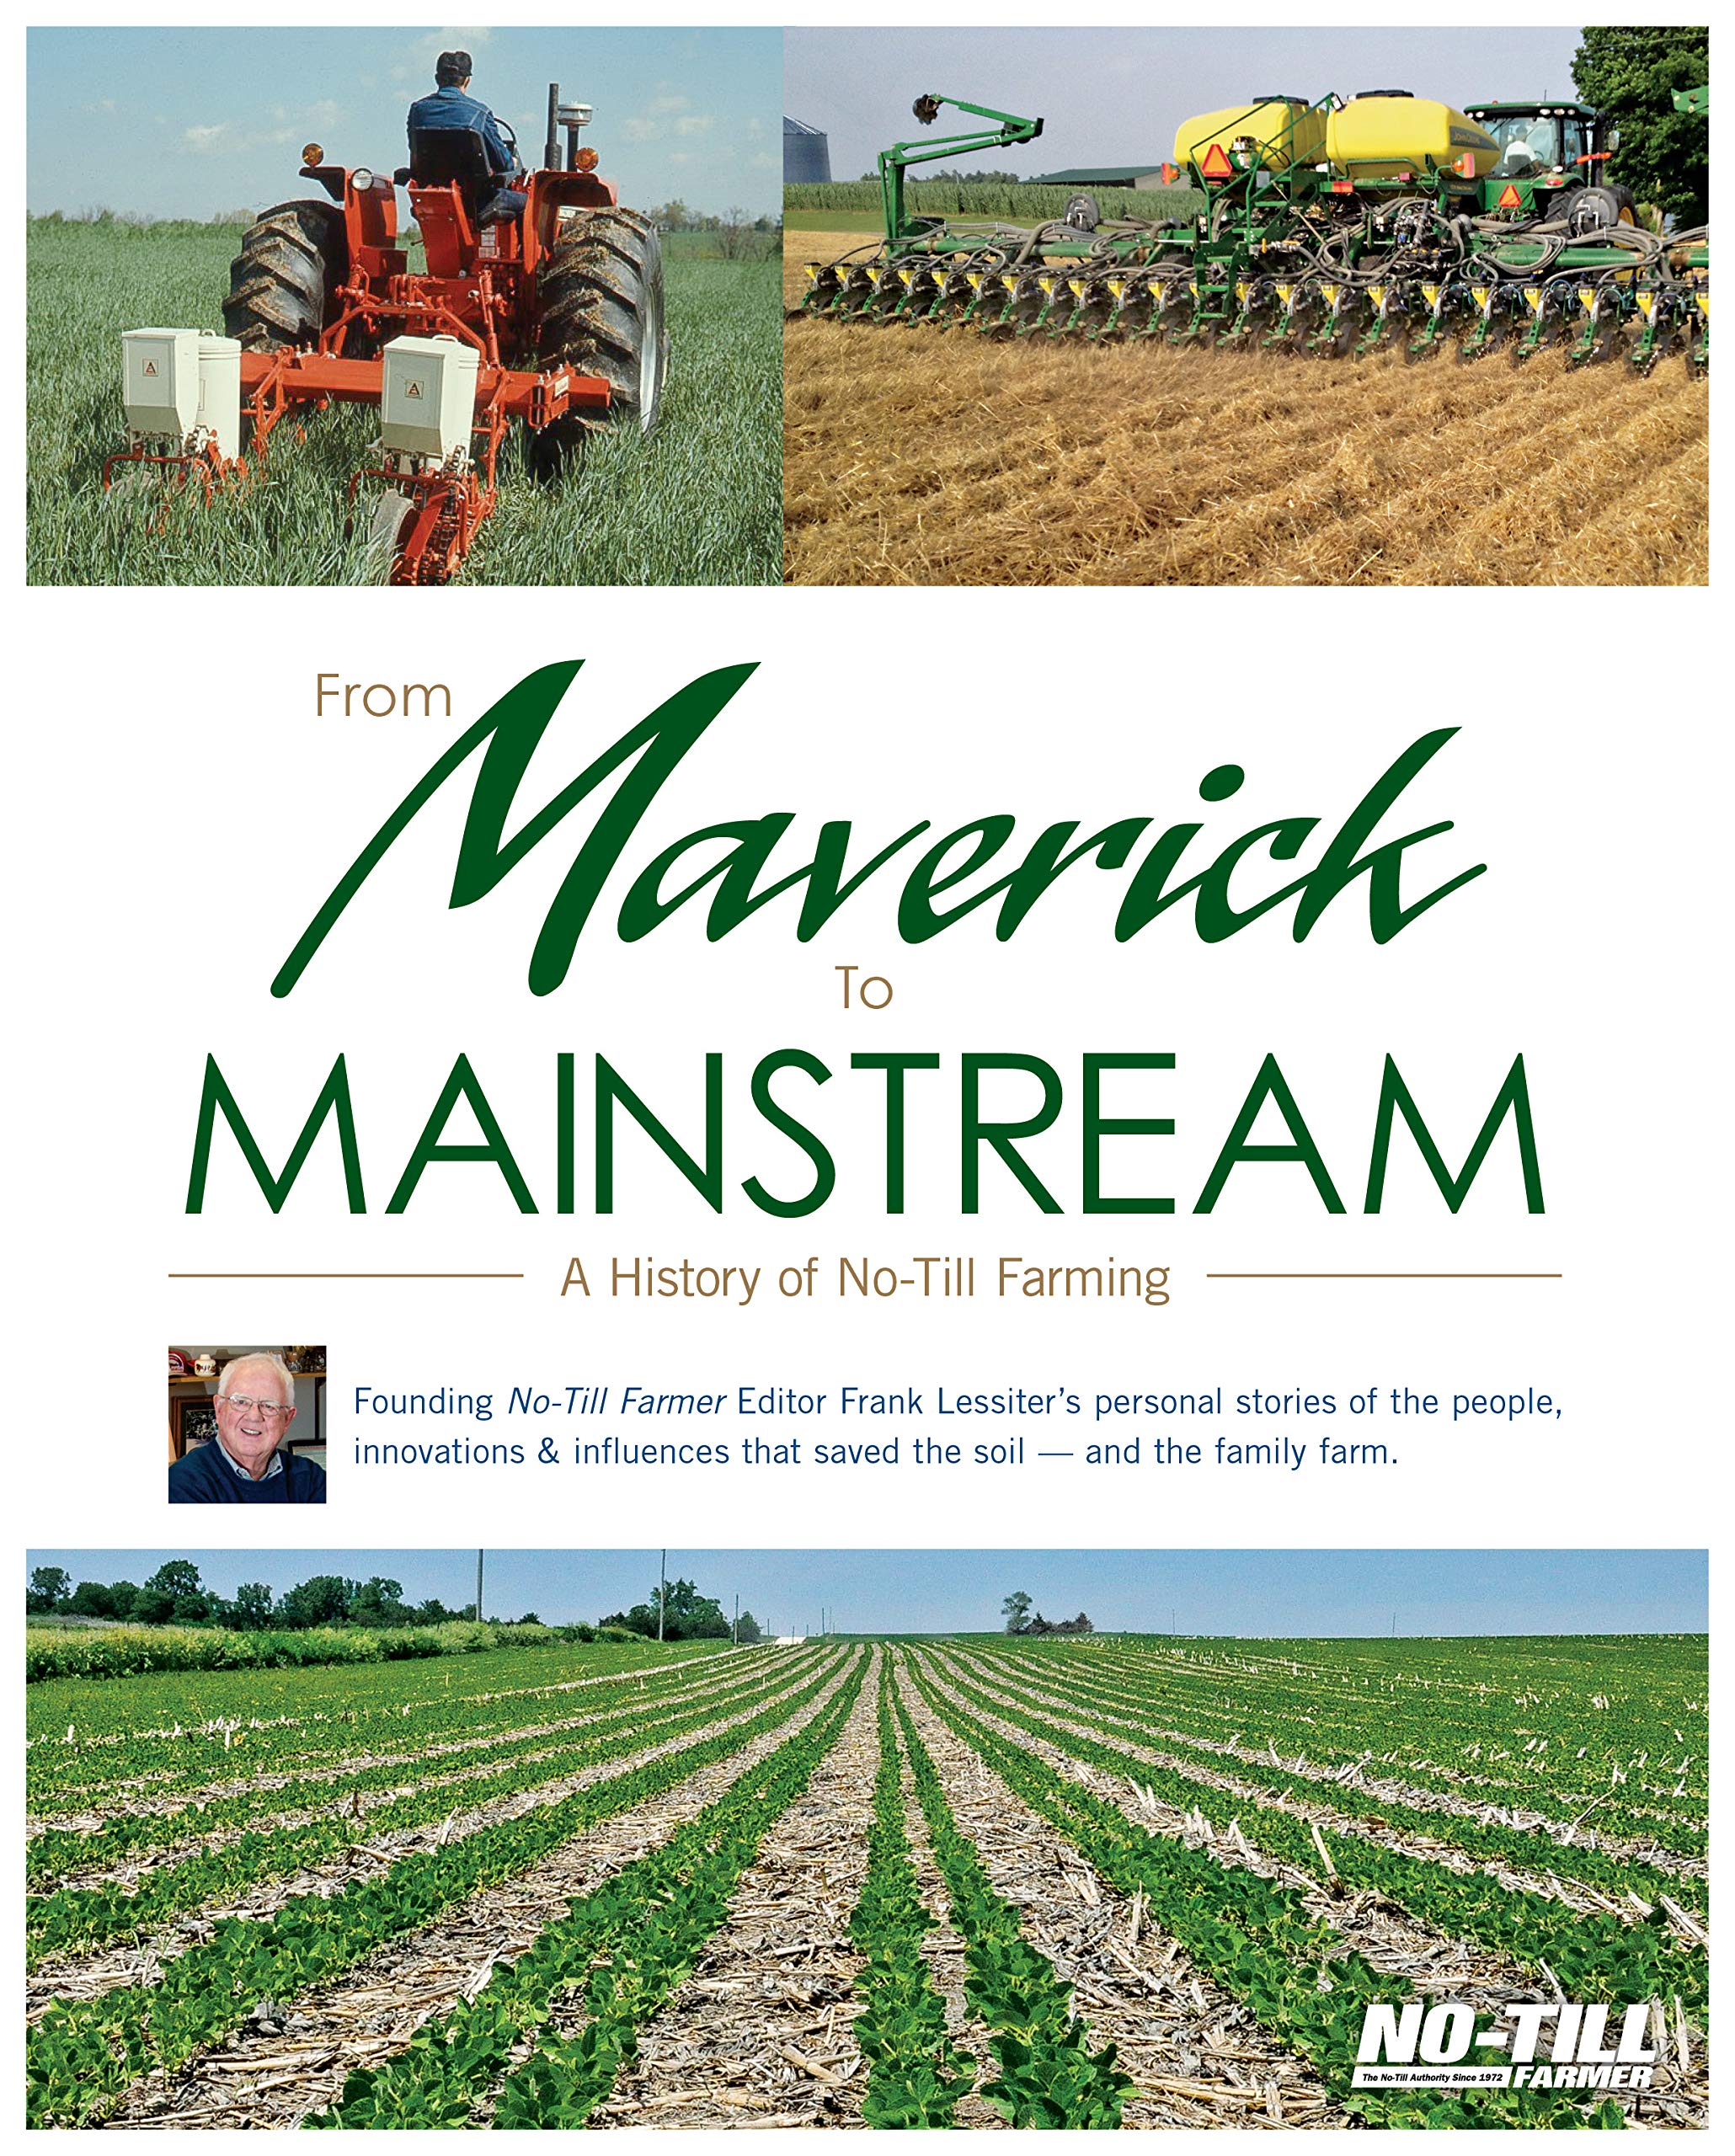 From Maverick to Mainstream: A History of No-Till Farming